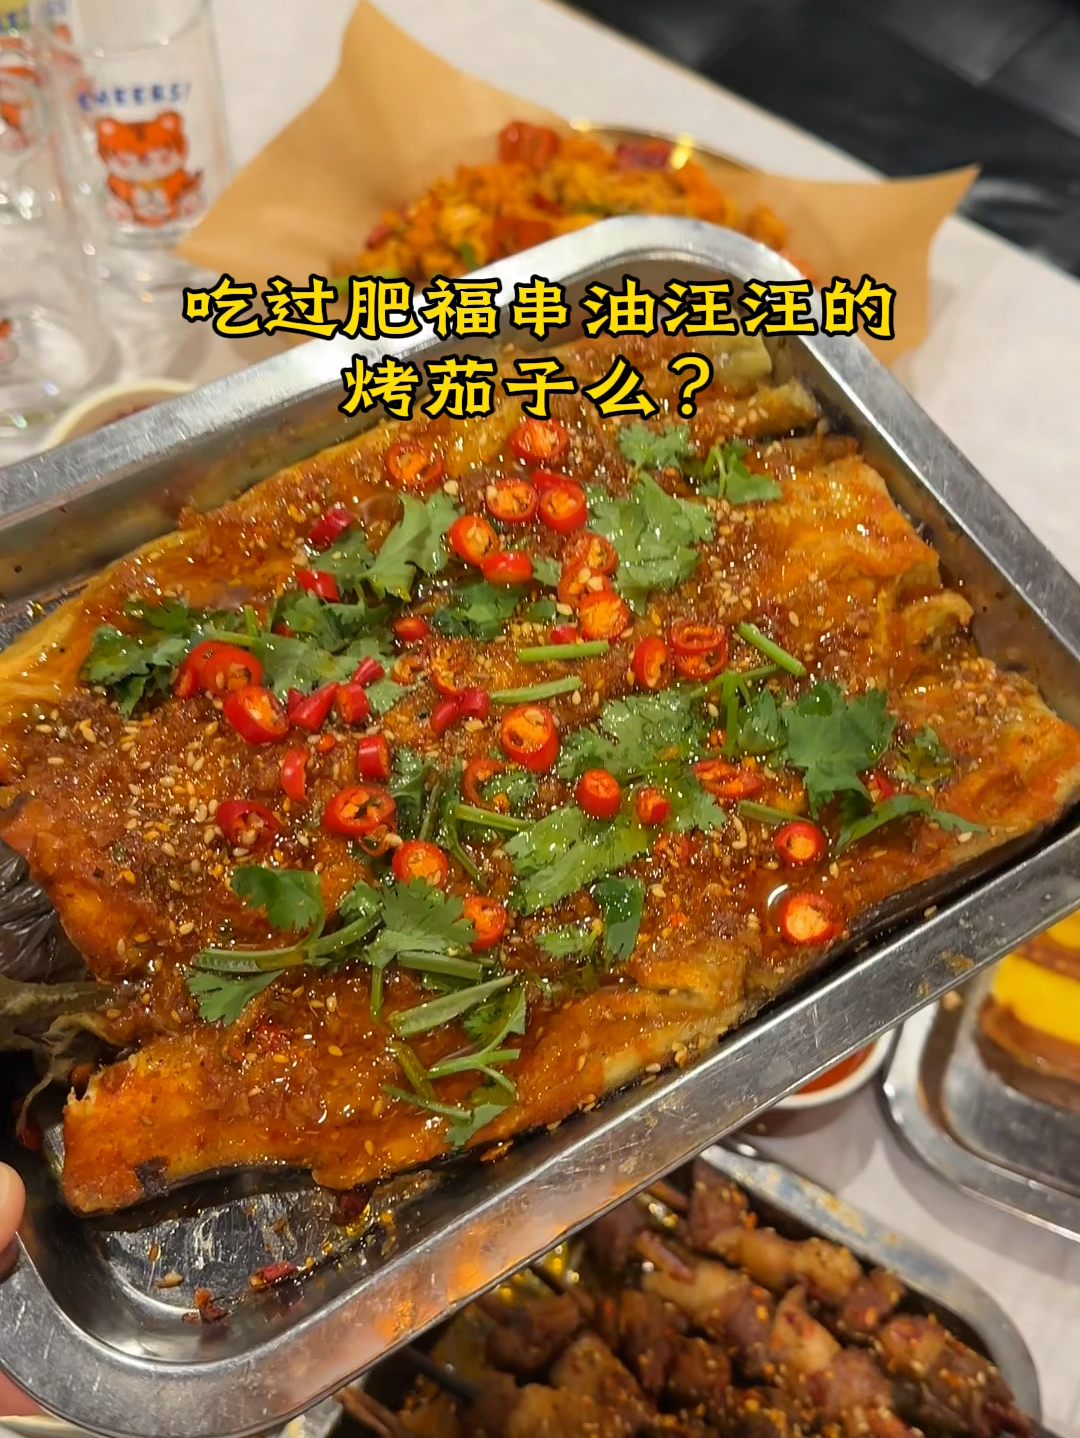 软趴趴的烤茄子‼️好吃到狂炫了一碗大米饭🍚#梅河口美食 #同城美食